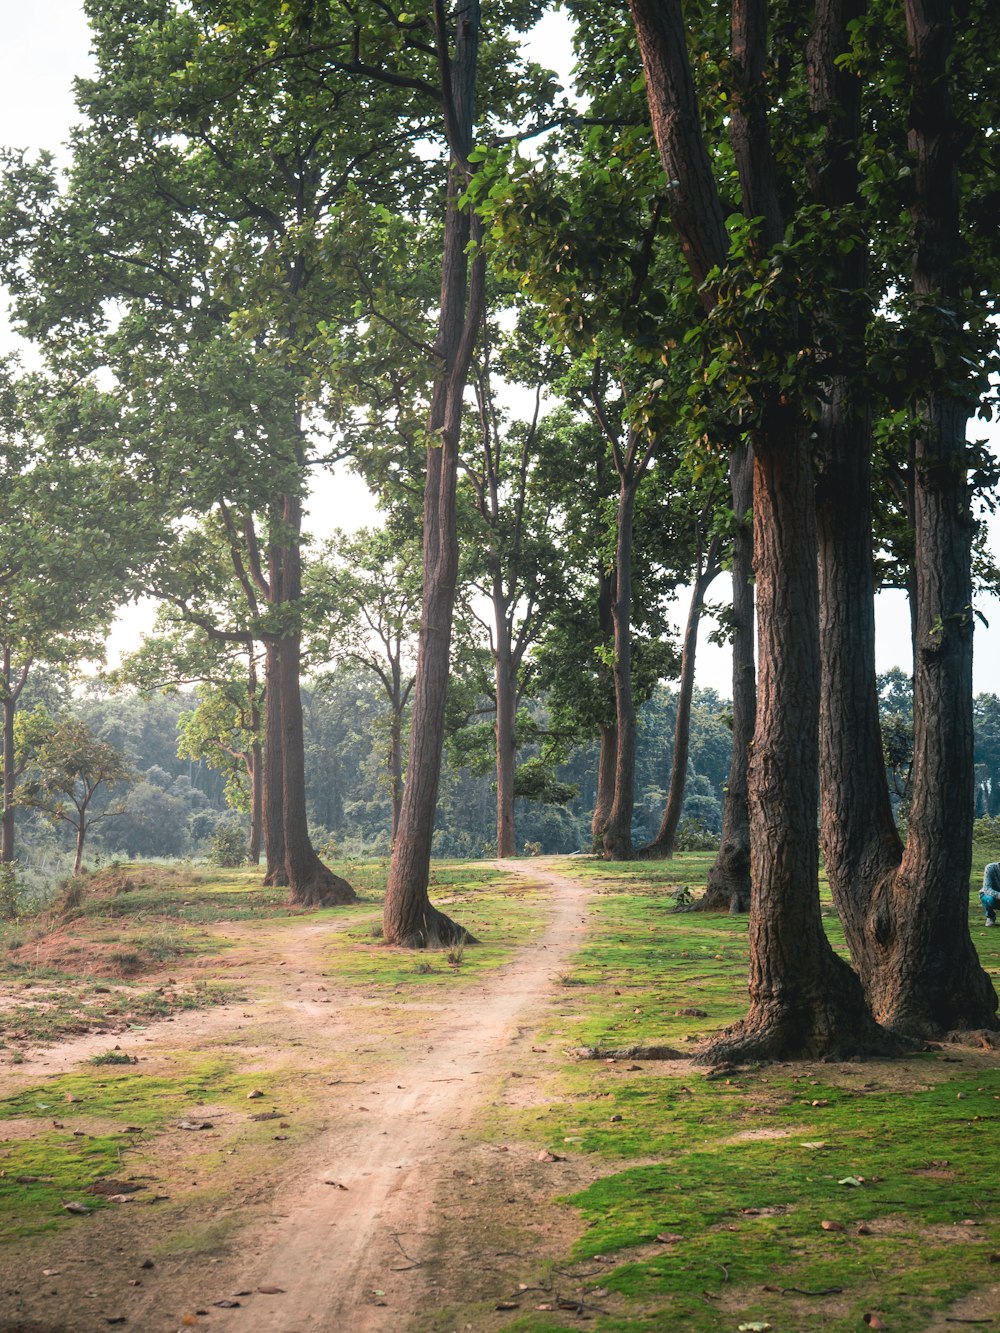 sentiero circondato da alberi ad alto fusto e verdi